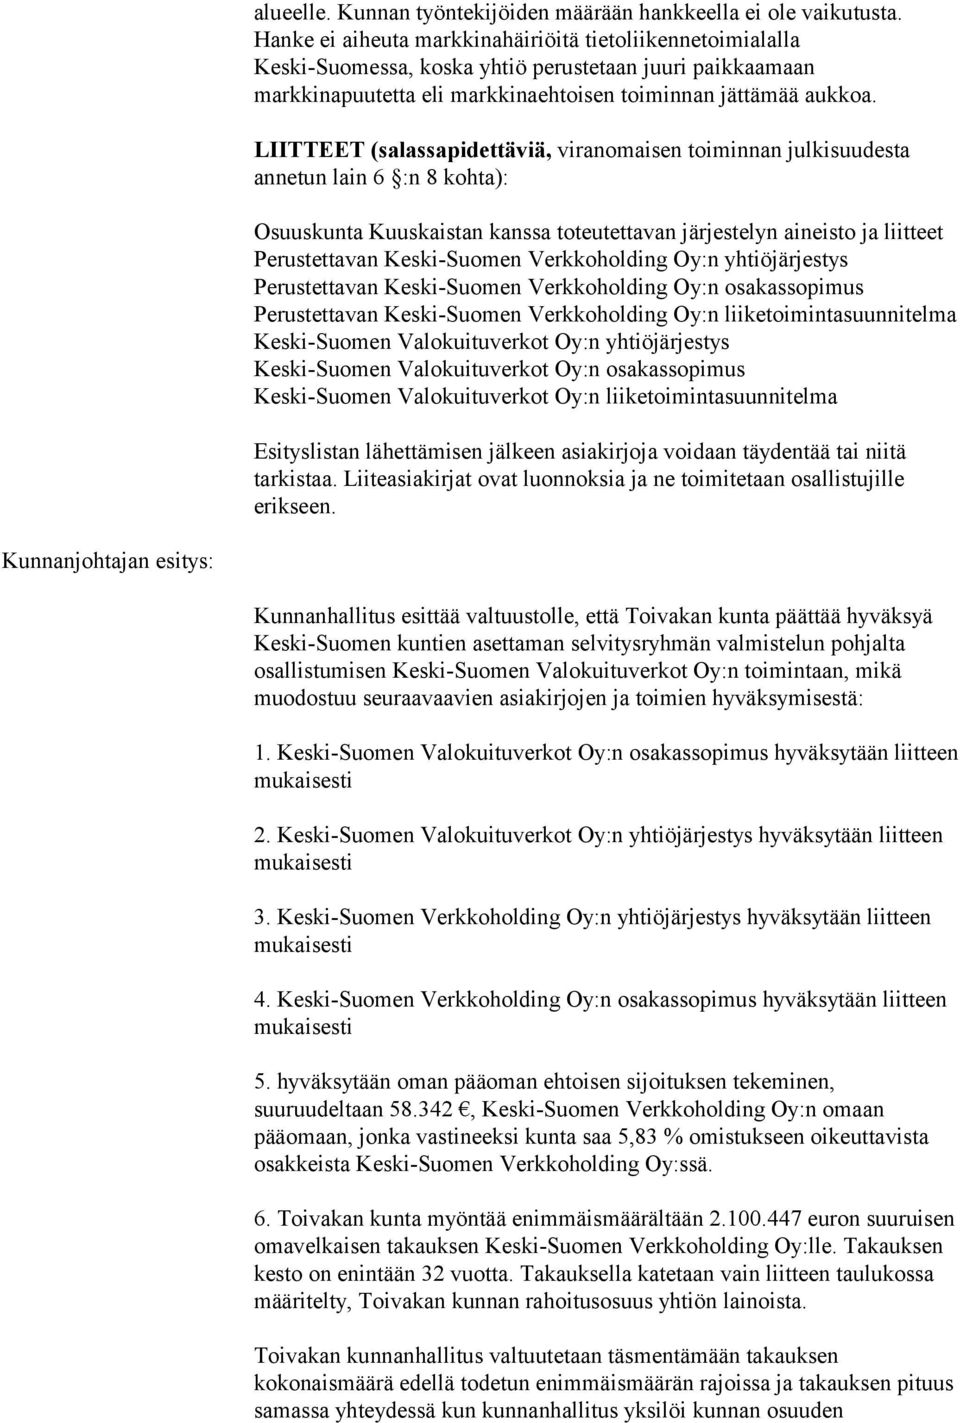 LIITTEET (salassapidettäviä, viranomaisen toiminnan julkisuudesta annetun lain 6 :n 8 kohta): Osuuskunta Kuuskaistan kanssa toteutettavan järjestelyn aineisto ja liitteet Perustettavan Keski-Suomen